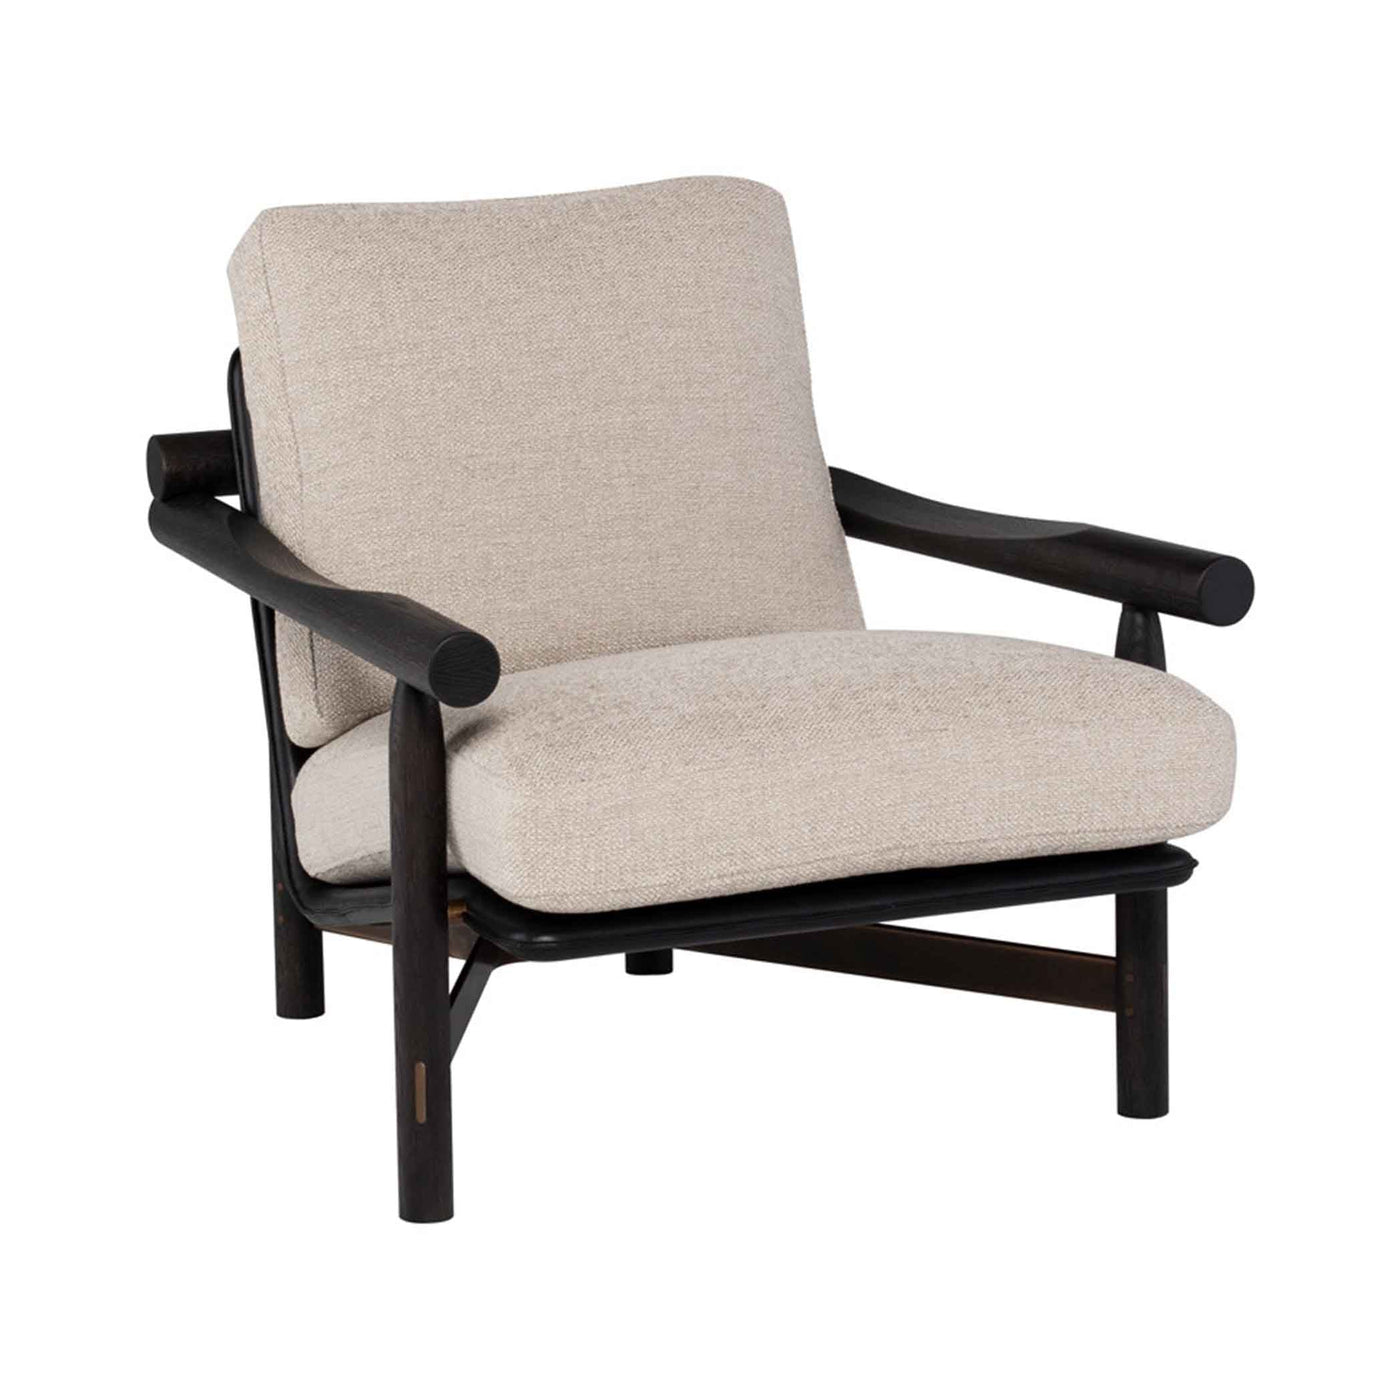 Confort et élégance avec le fauteuil Stilt de District Eight. Finitions en acier, base en chêne et coussins ergonomiques pour une assise parfaite. Disponible en chêne ébonisé ou fumé. Tara Quartz.